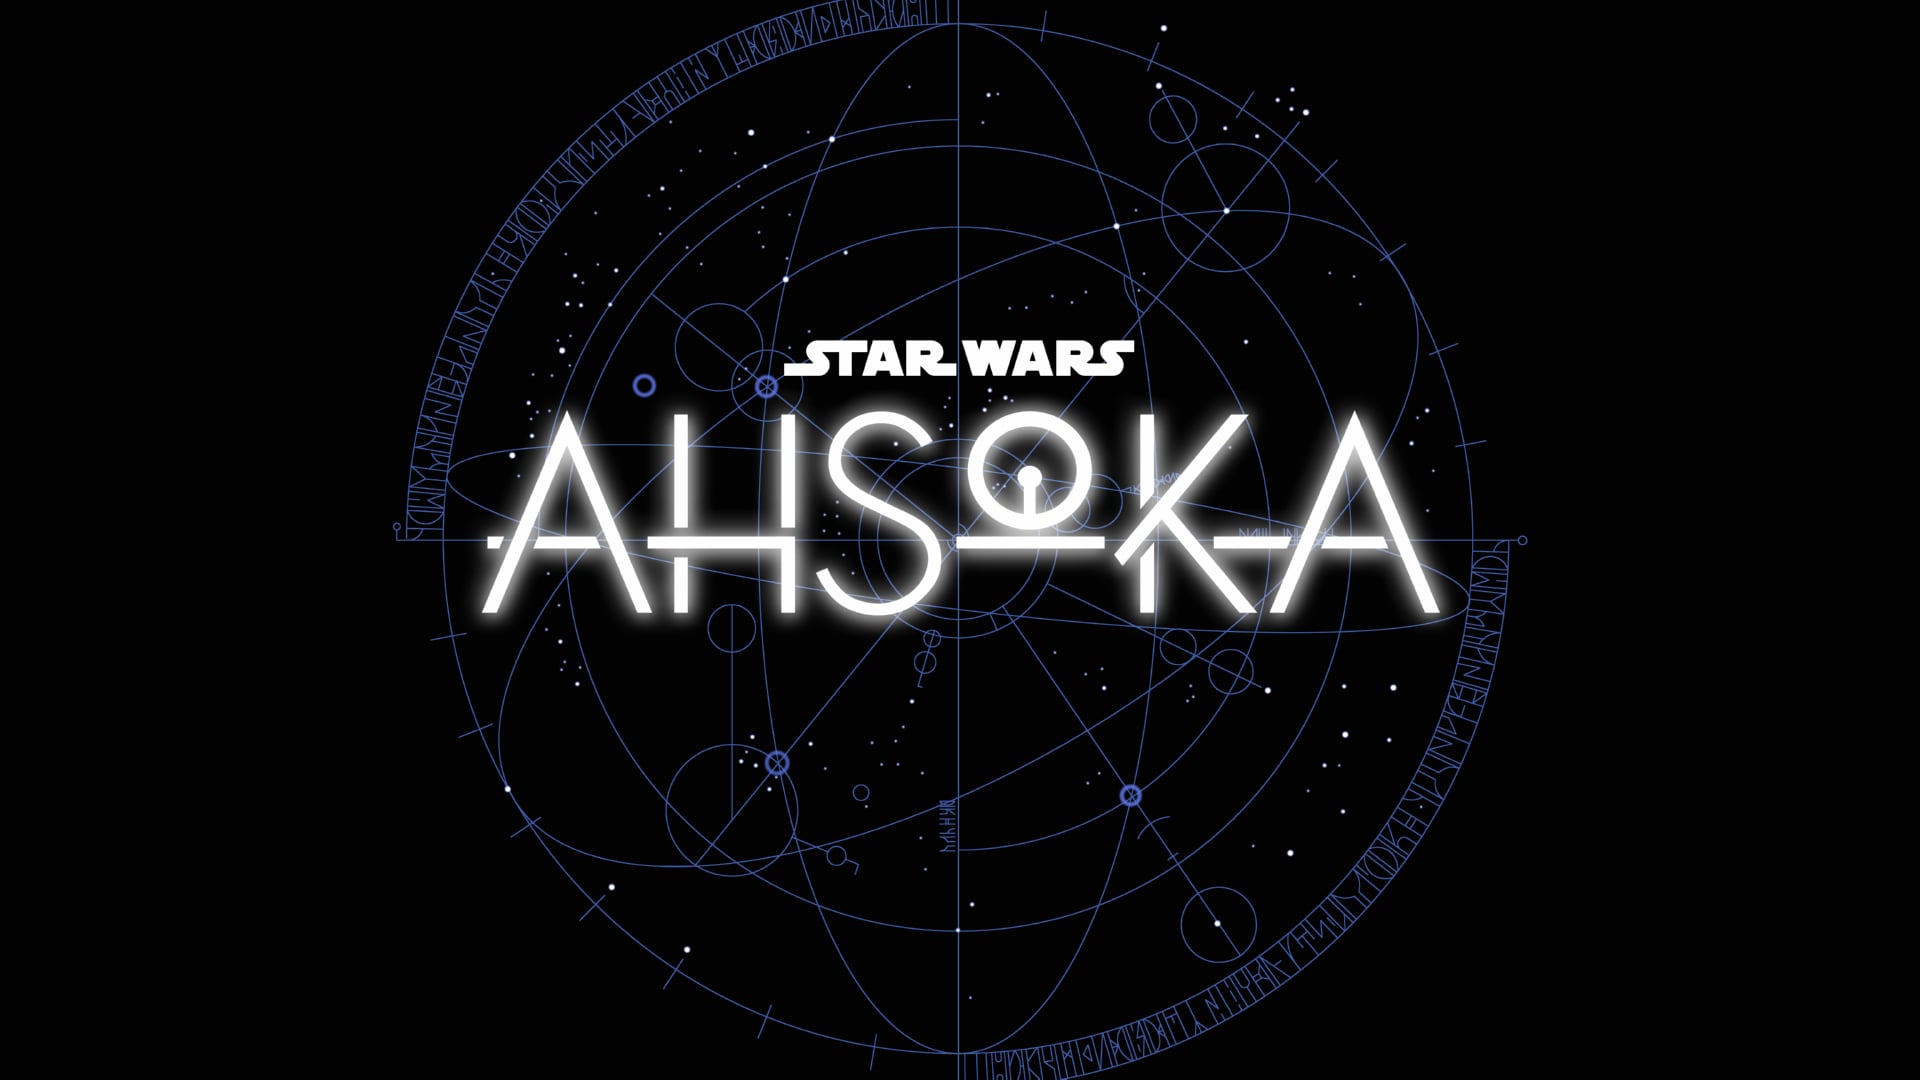 Digital Art Star Wars Ahsoka at 320 x 480 iPhone size wallpapers HD quality